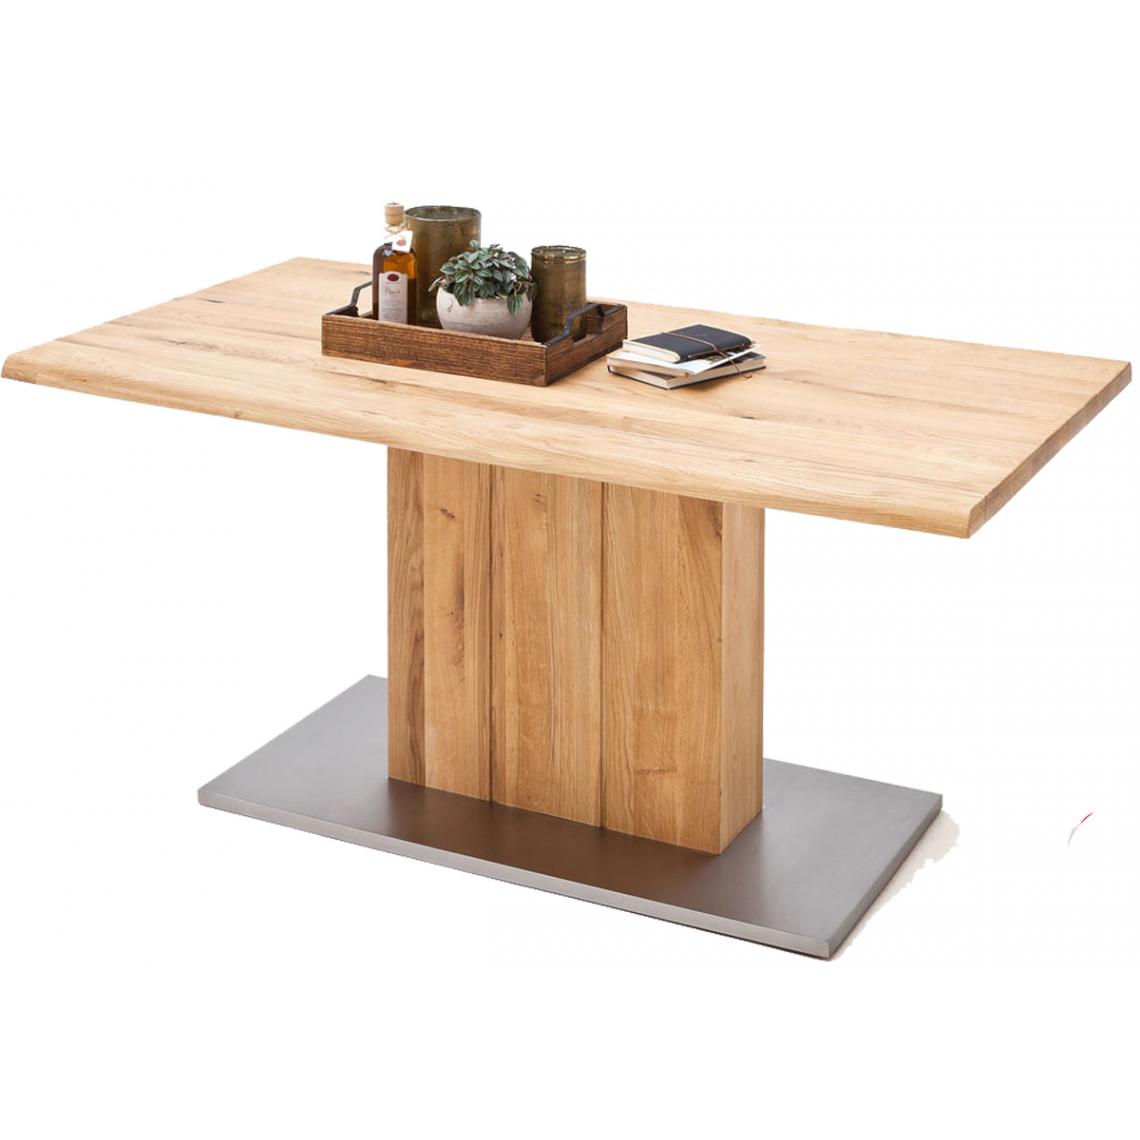 Pegane - Table à manger en chêne massif huilé bord d'arbre - L160 x H77 x P90 cm - Tables à manger